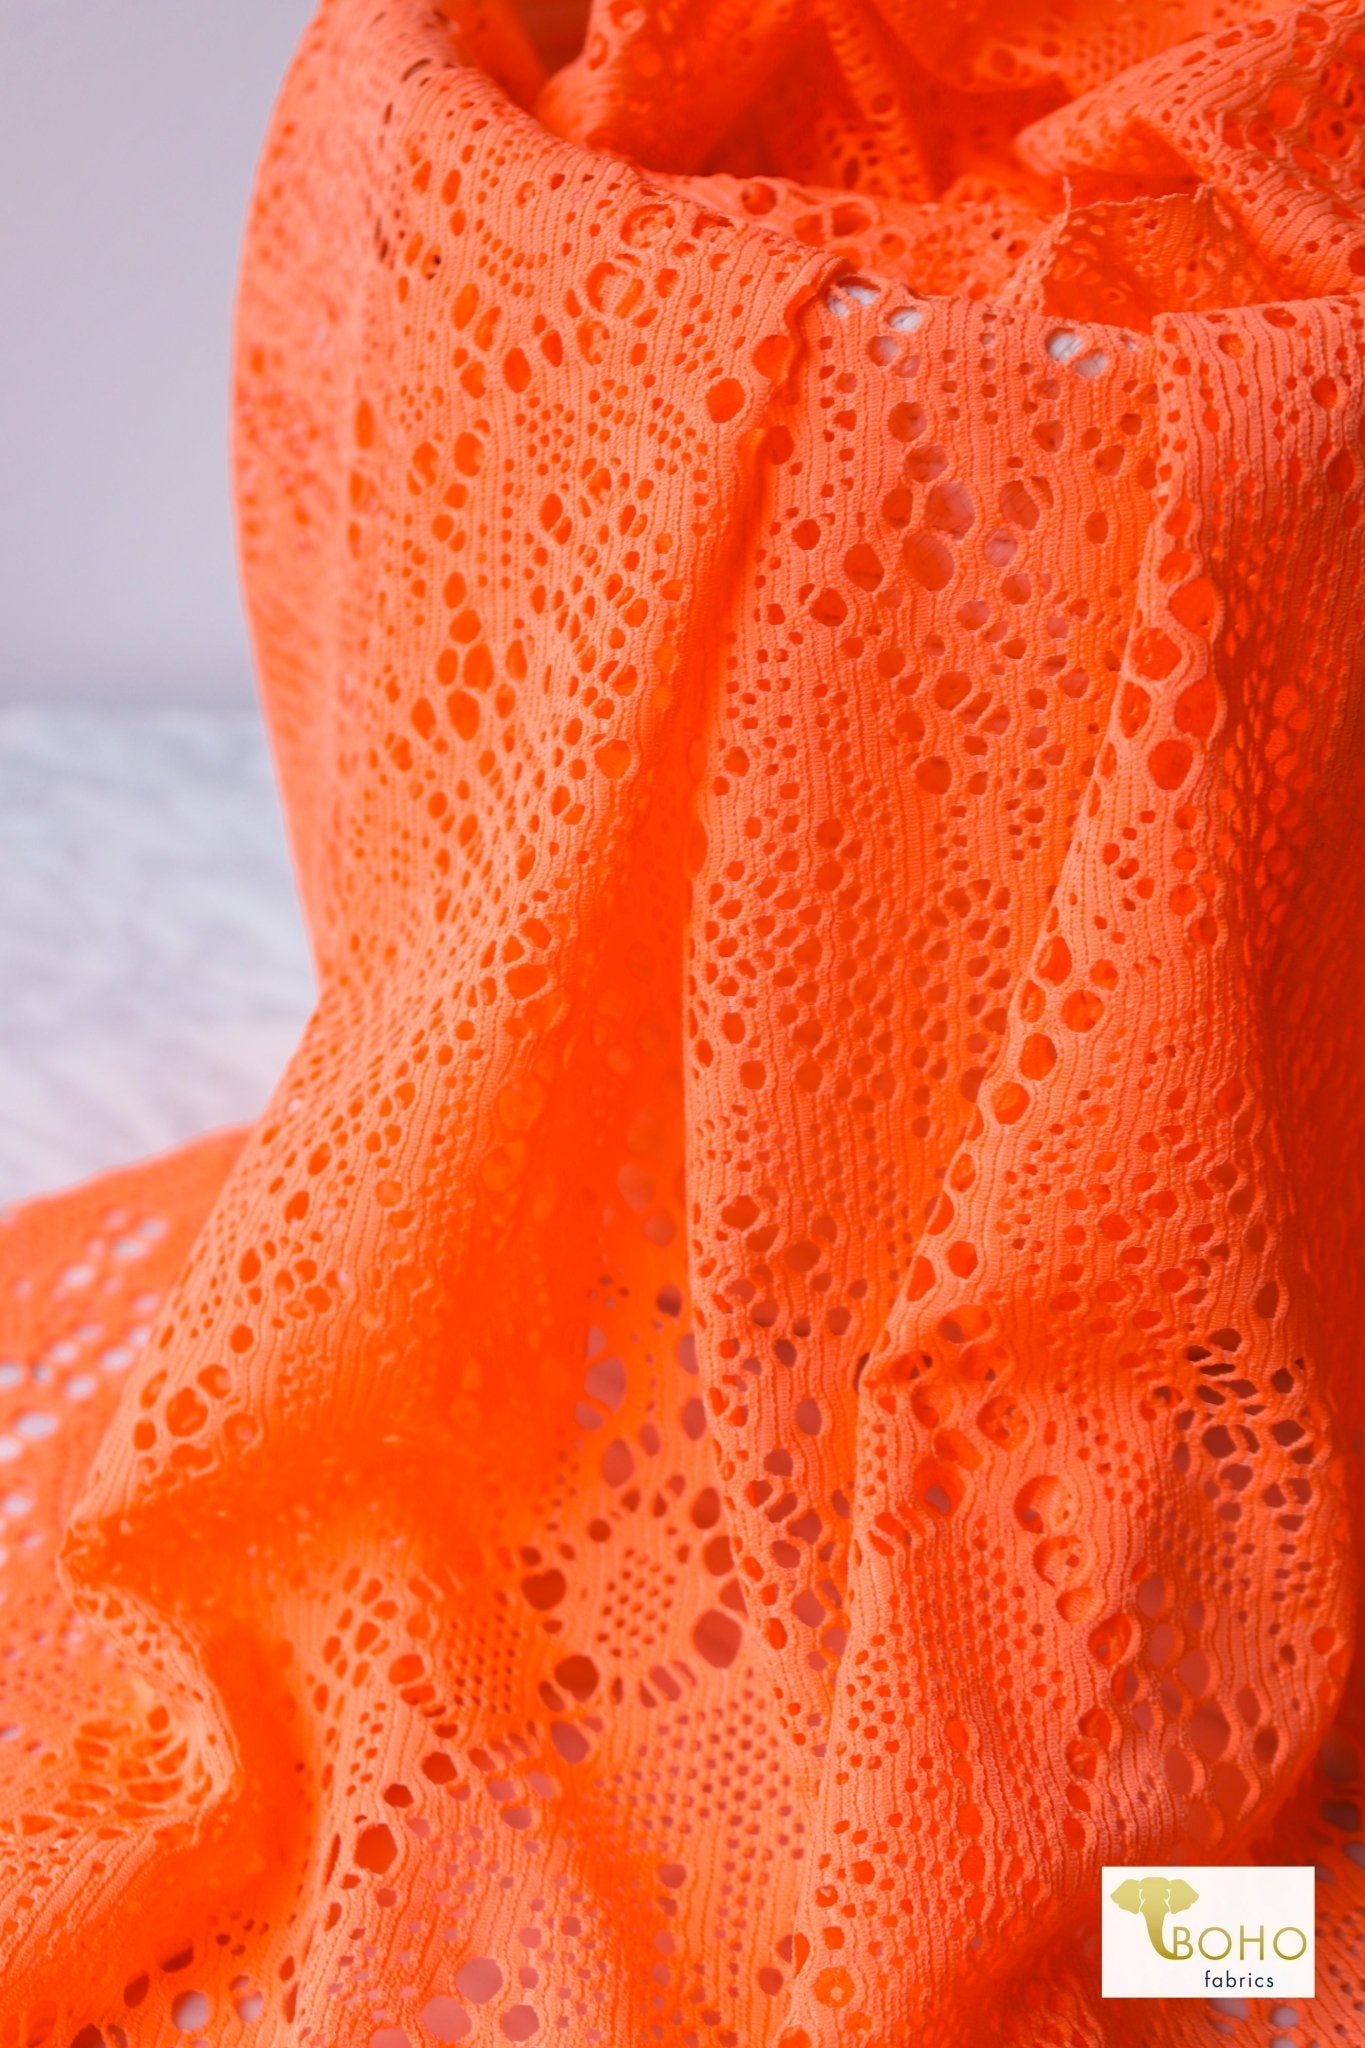 Cresendo in Neon Orange, Stretch Lace Fabric - Boho Fabrics - Stretch Lace Fabric